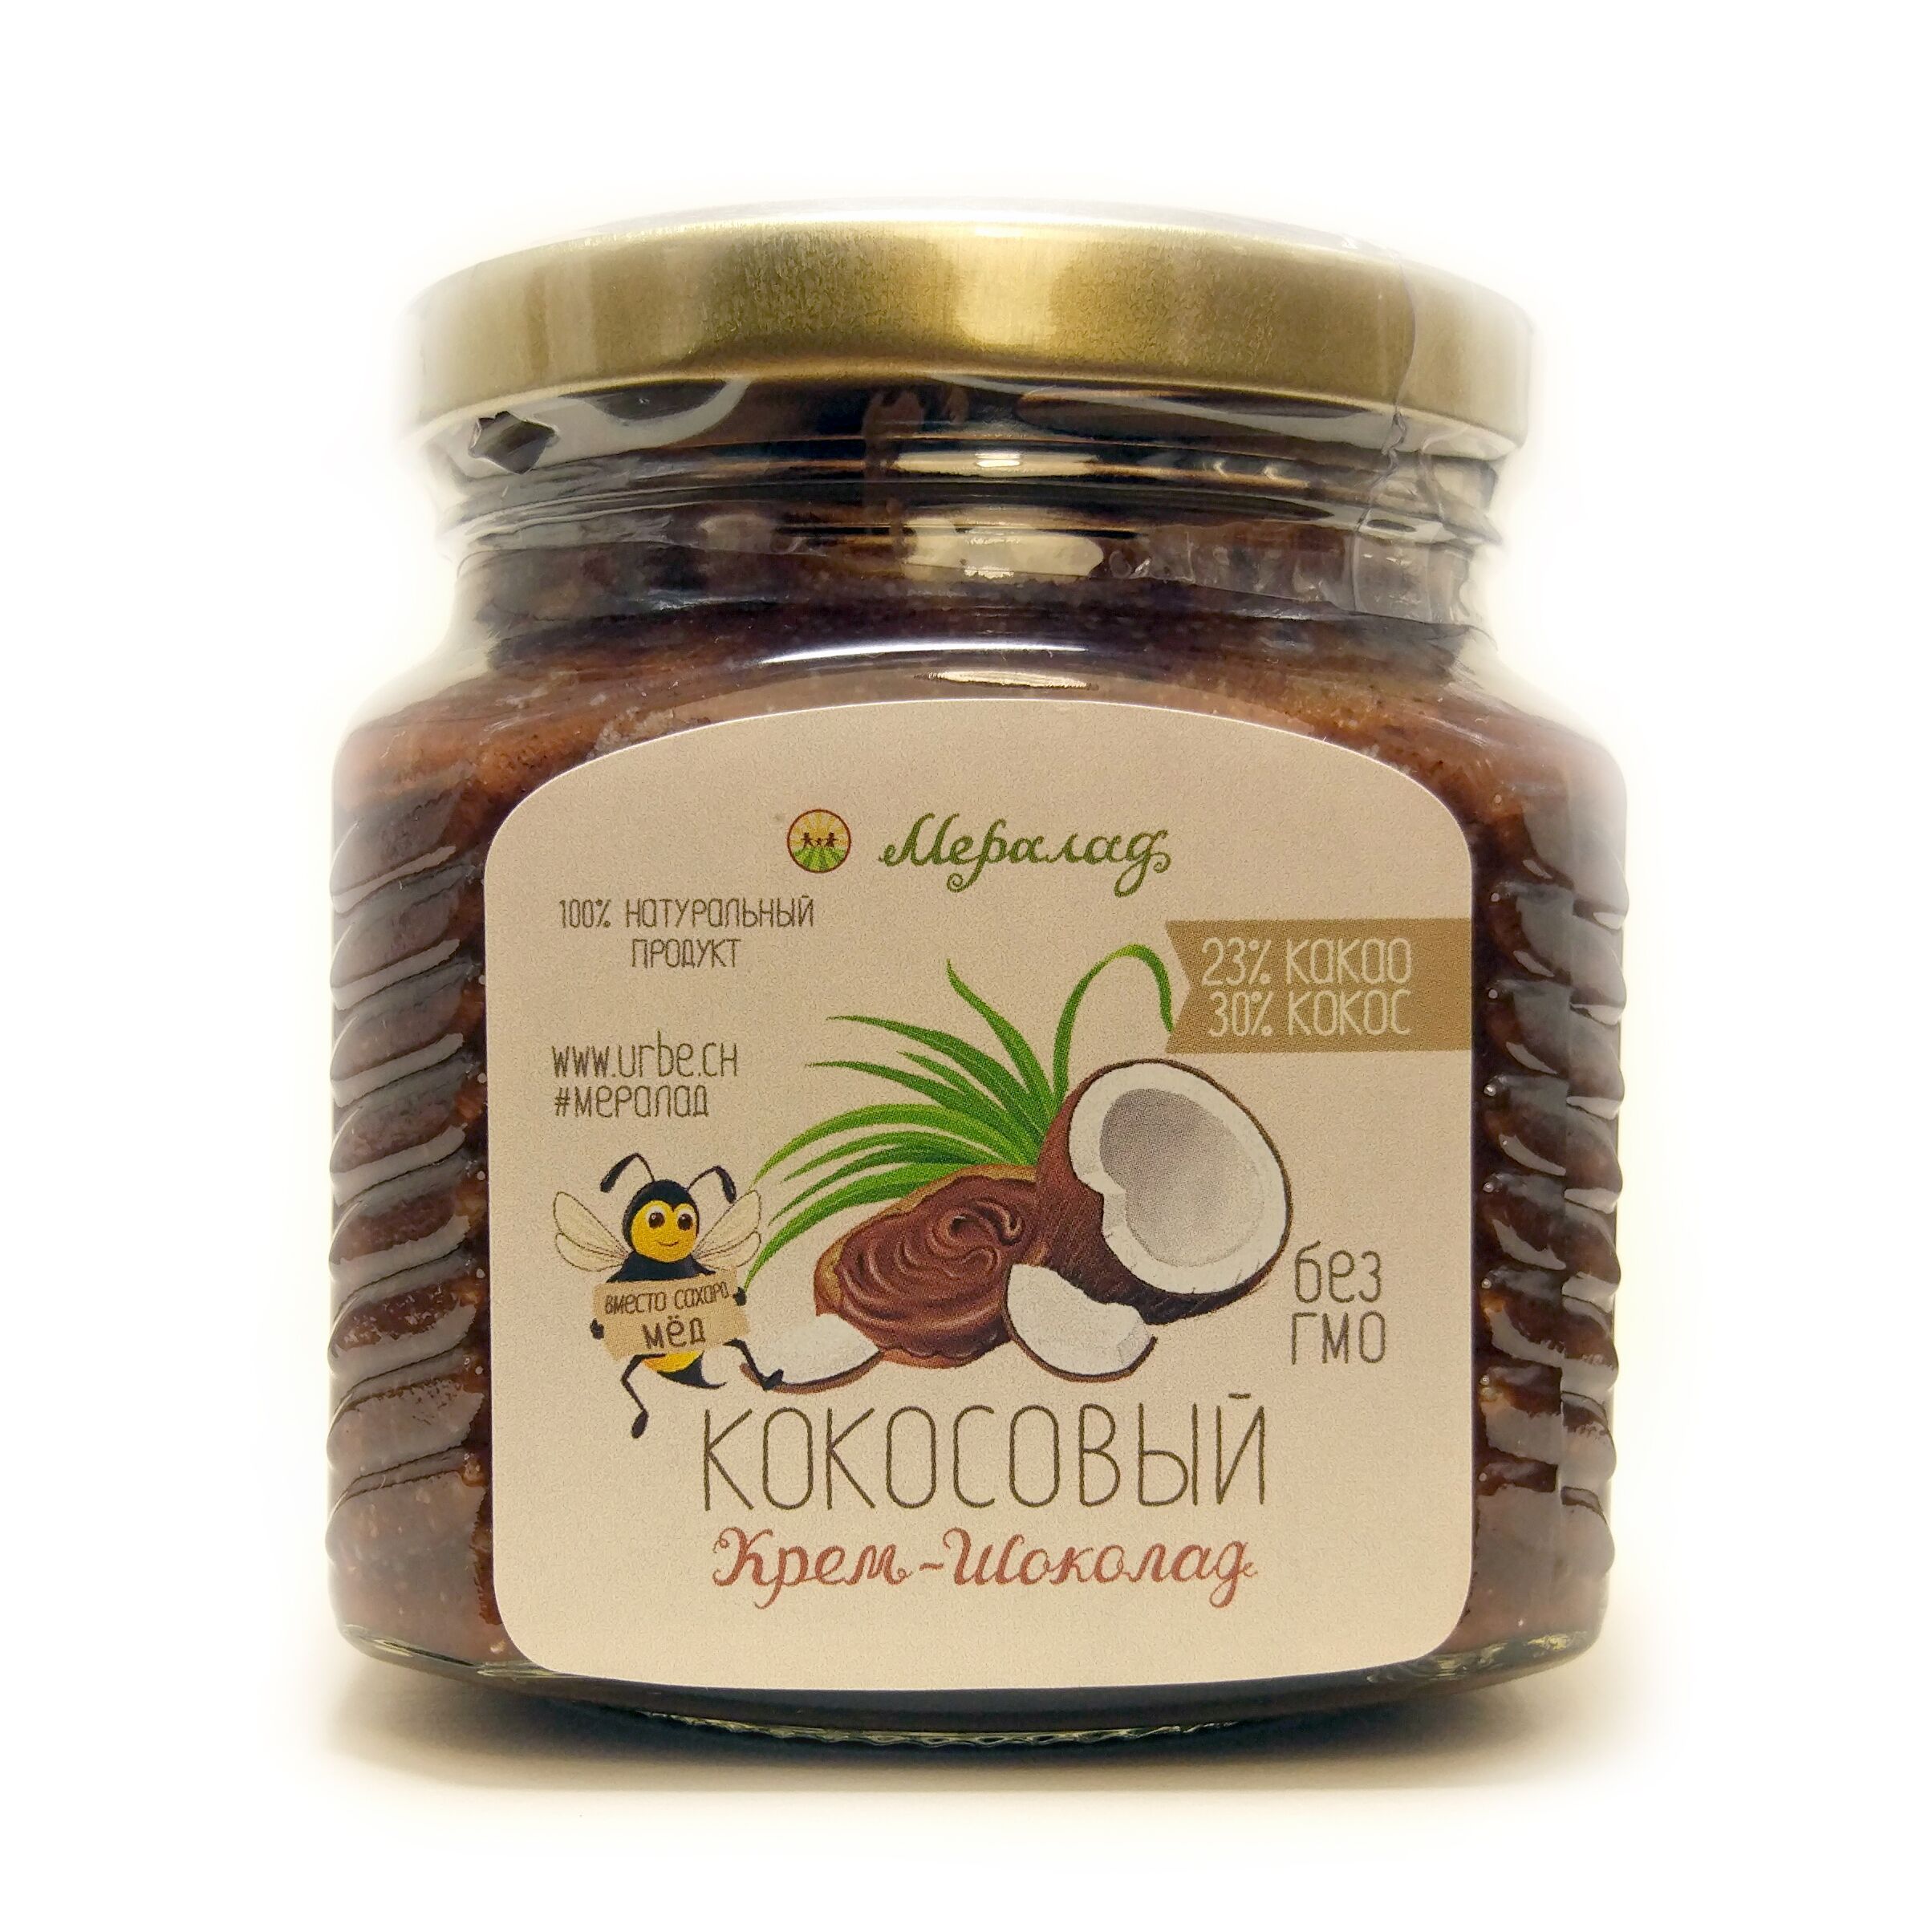 Урбеч Кокосовый крем-шоколад 230 гр